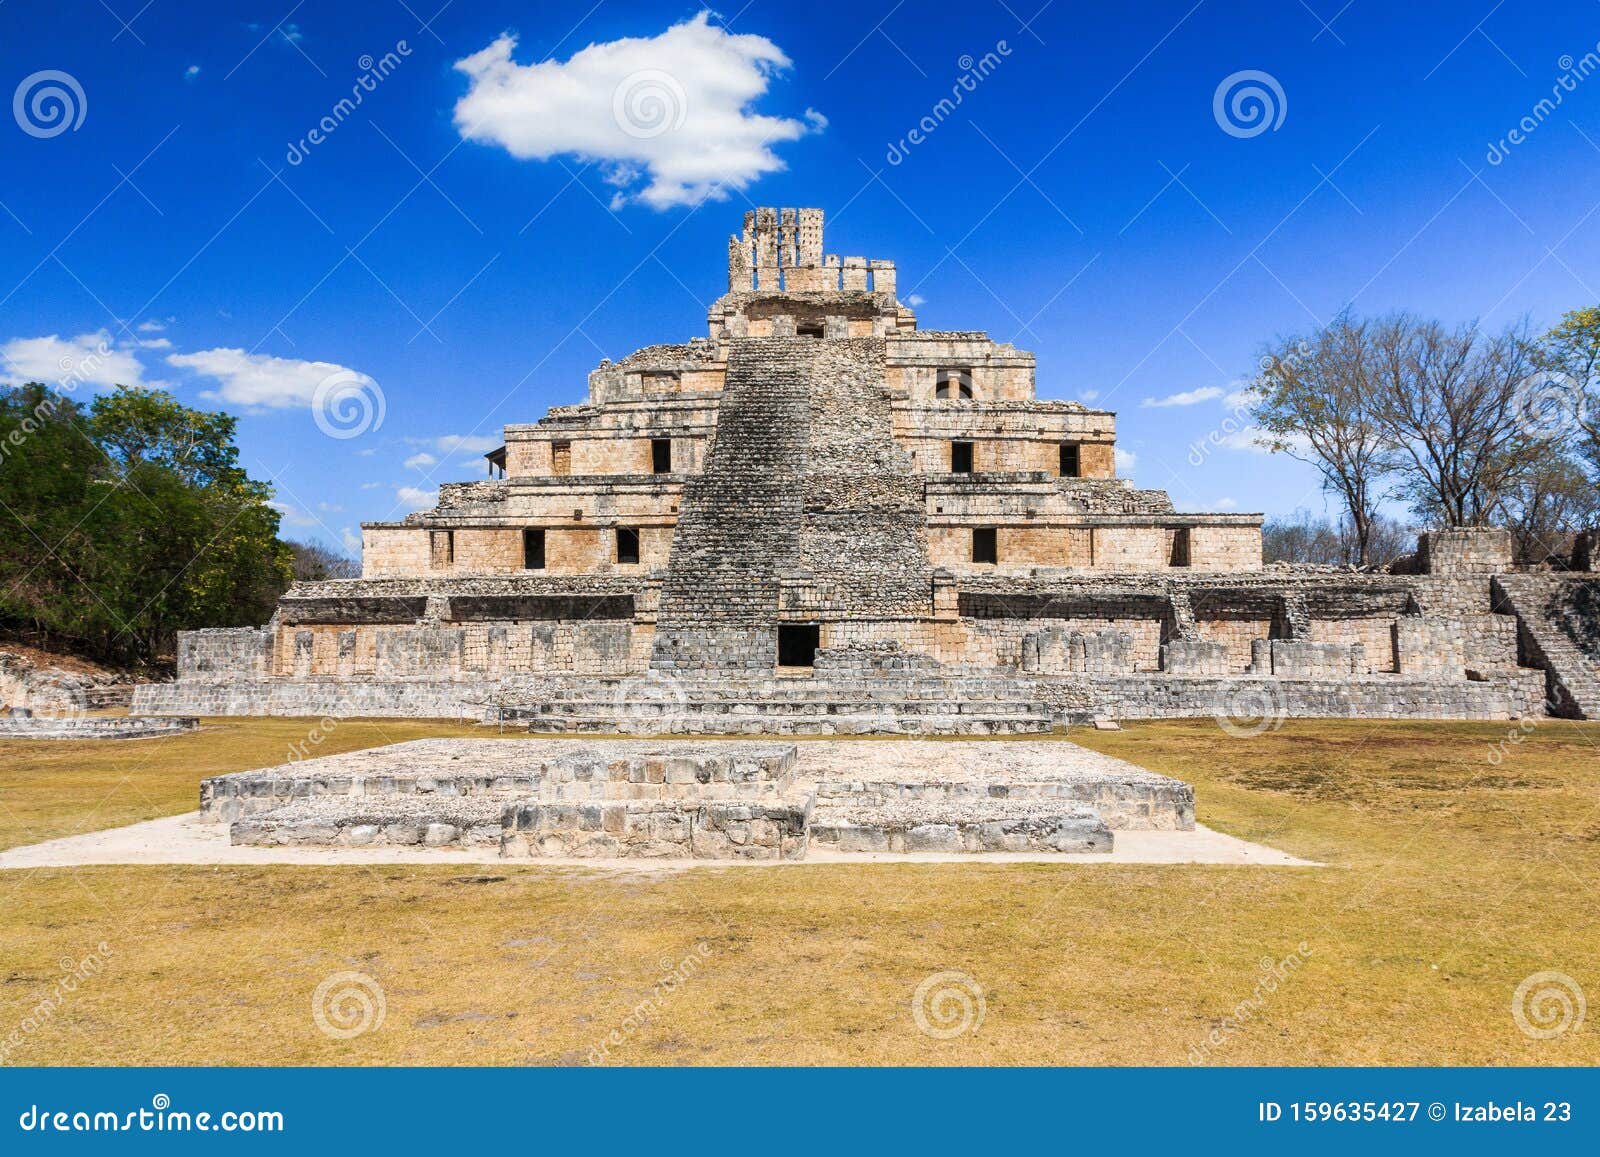 edzna, mexico. edzna mayan city. the pyramid of the five floors.